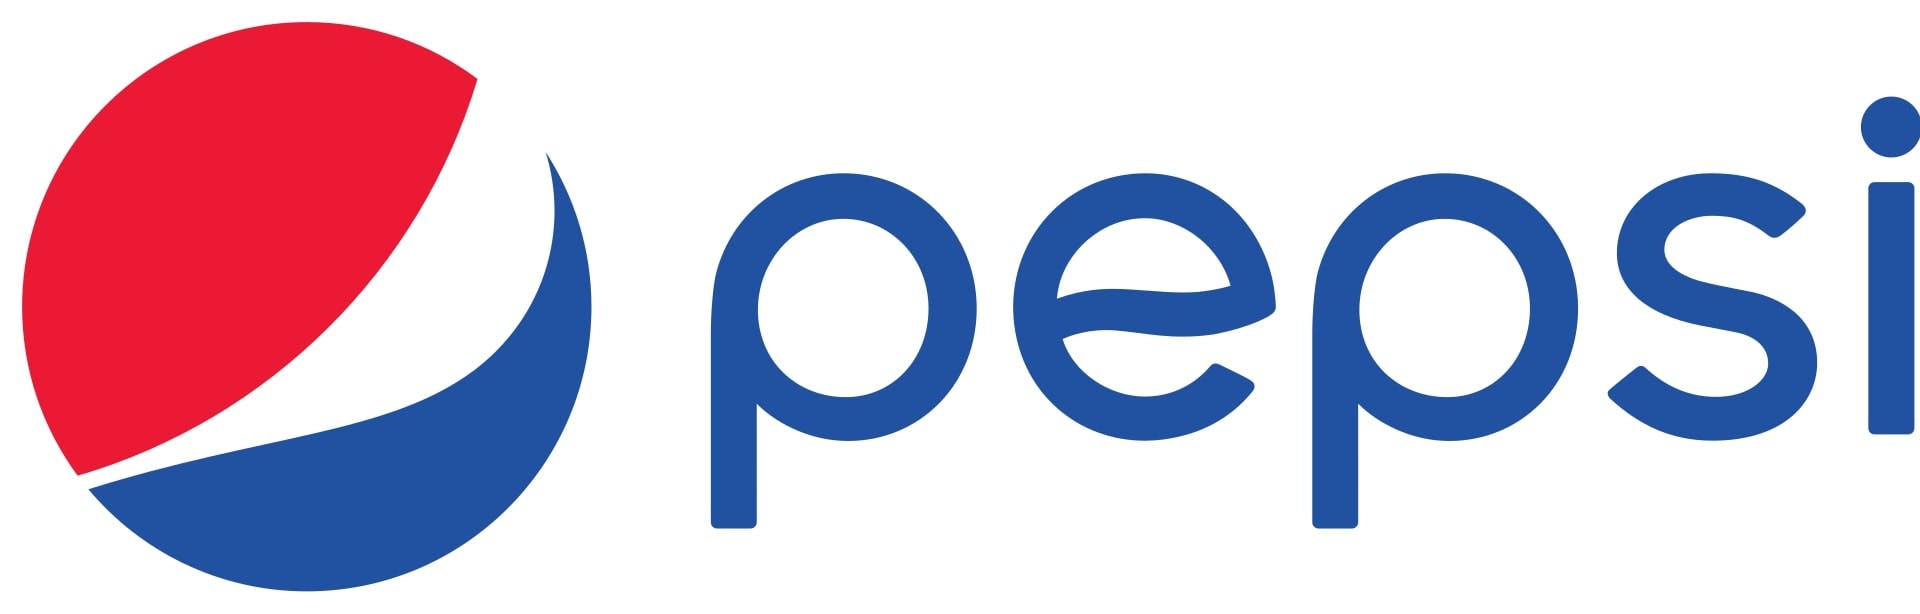  logo de la marque pepsi